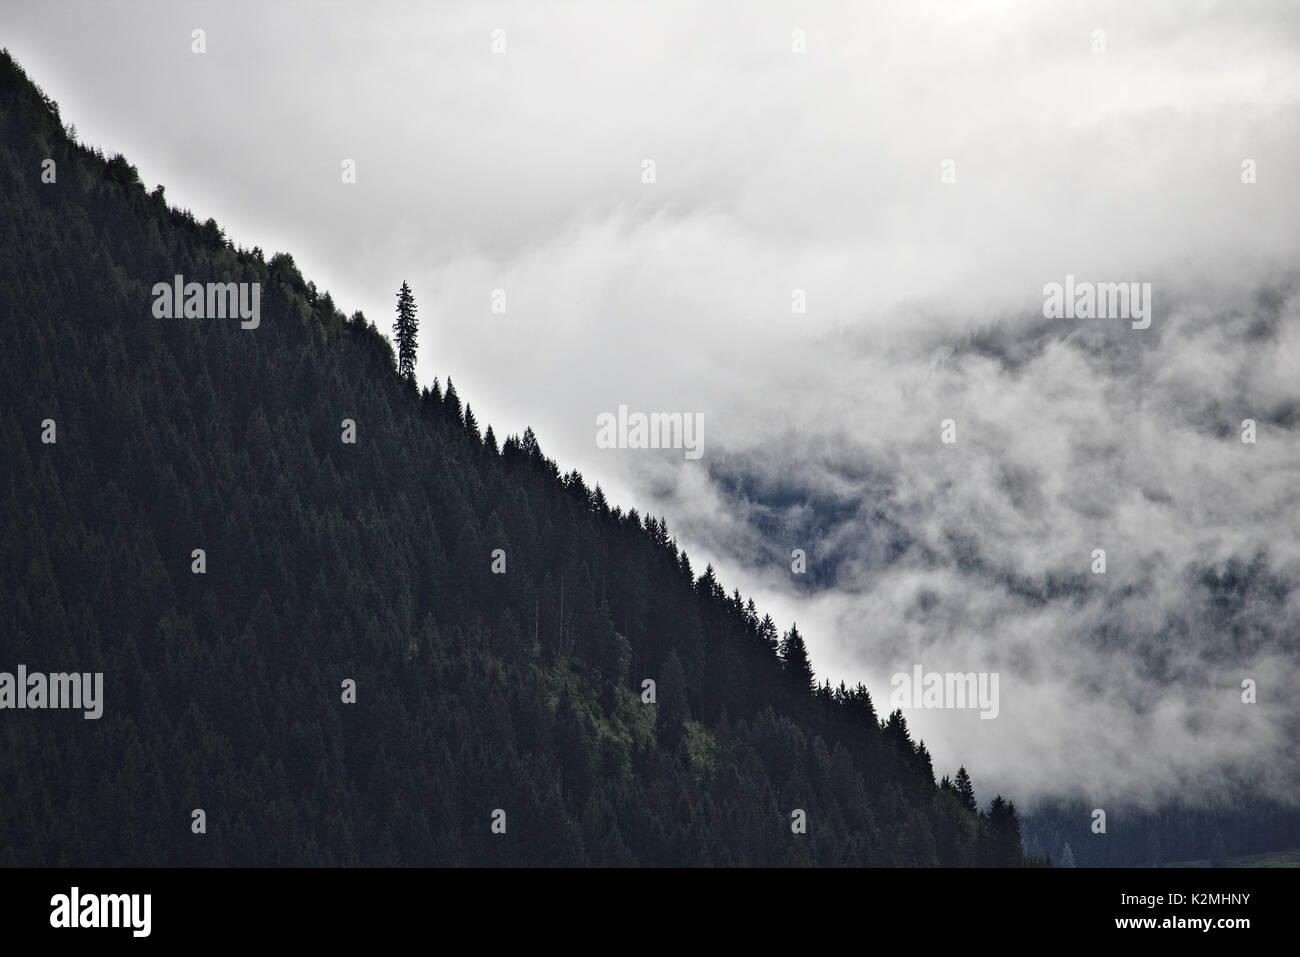 Pentes boisées de la crête de la montagne dans les Alpes autrichiennes, silhouetté contre la brume et les nuages avec un gros pin en saillie Banque D'Images